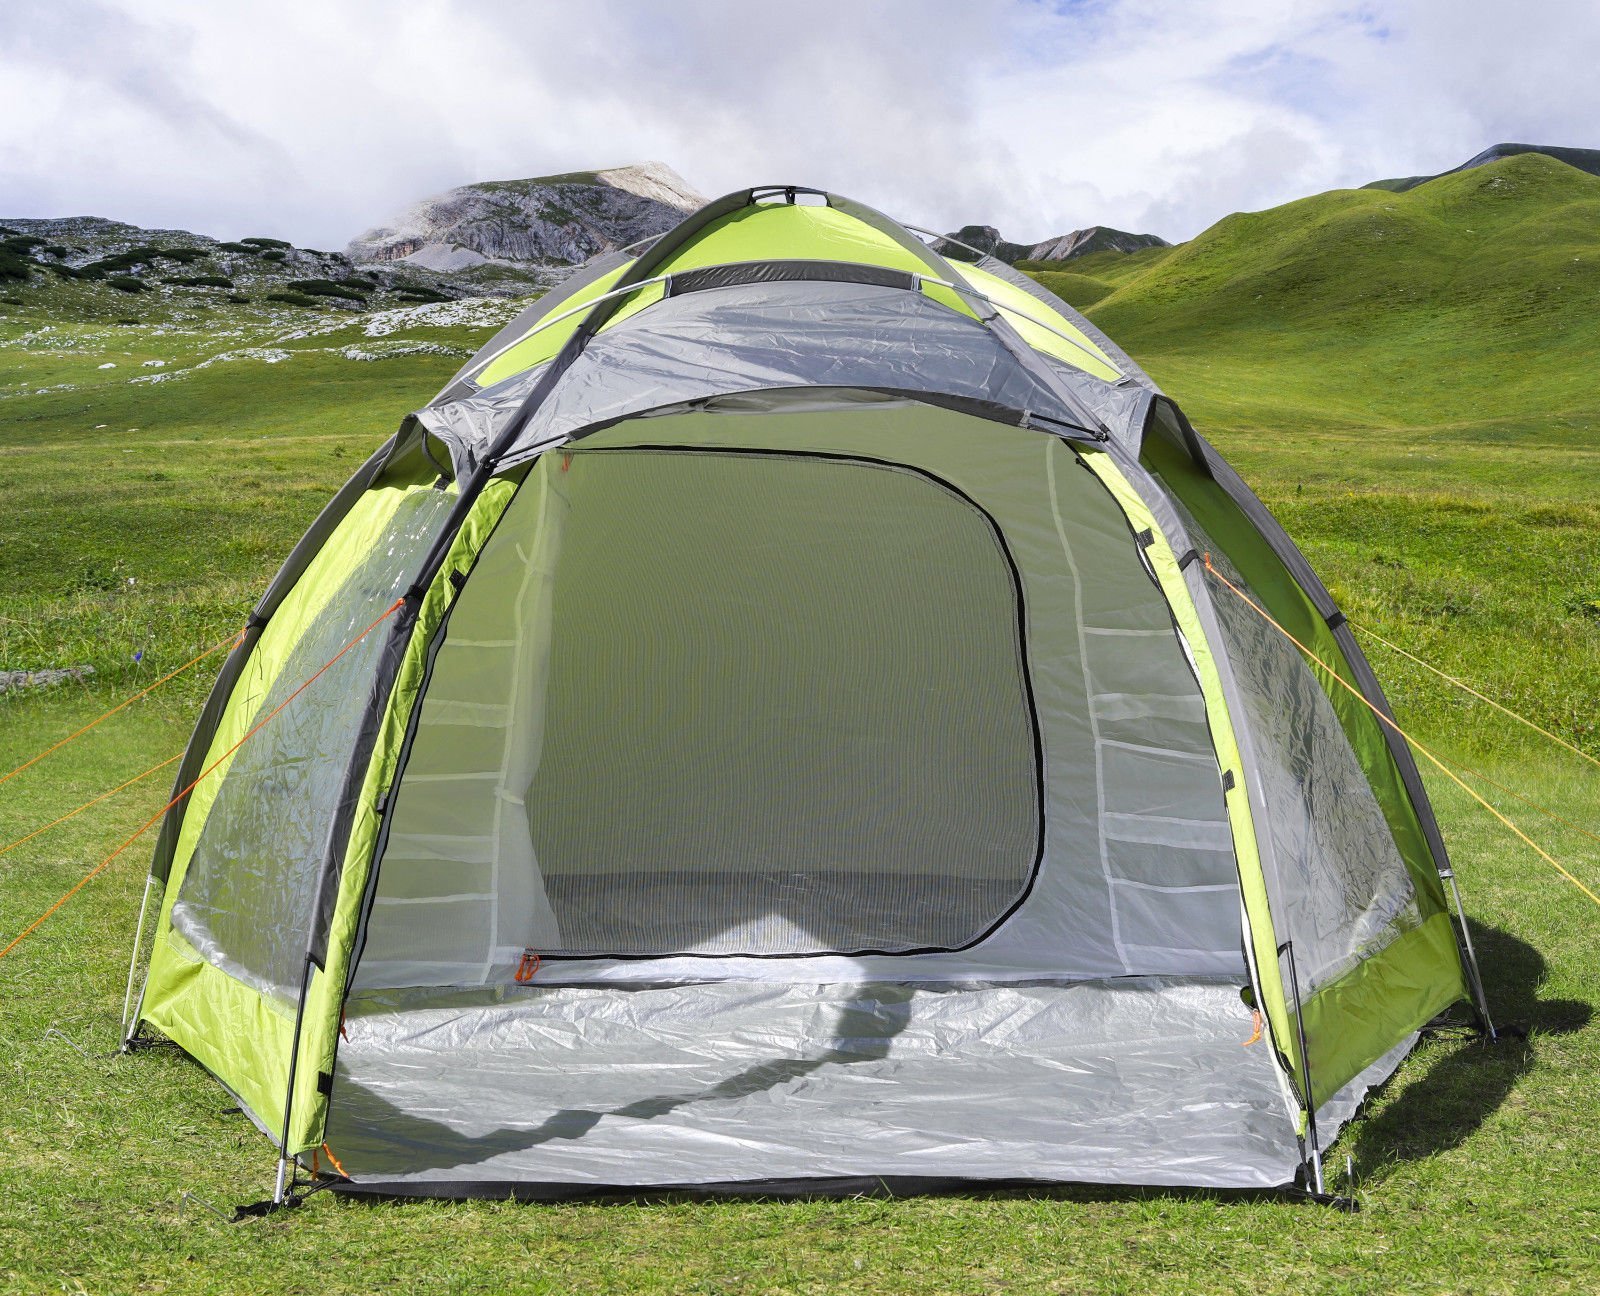 Ремонт палаток. Палатка MCKINLEY Samos 6. Туристическая палатка Eurotrail Festival. Палатка Alaska Trek 2. Палатка Igloo Nevada Plus 4p.